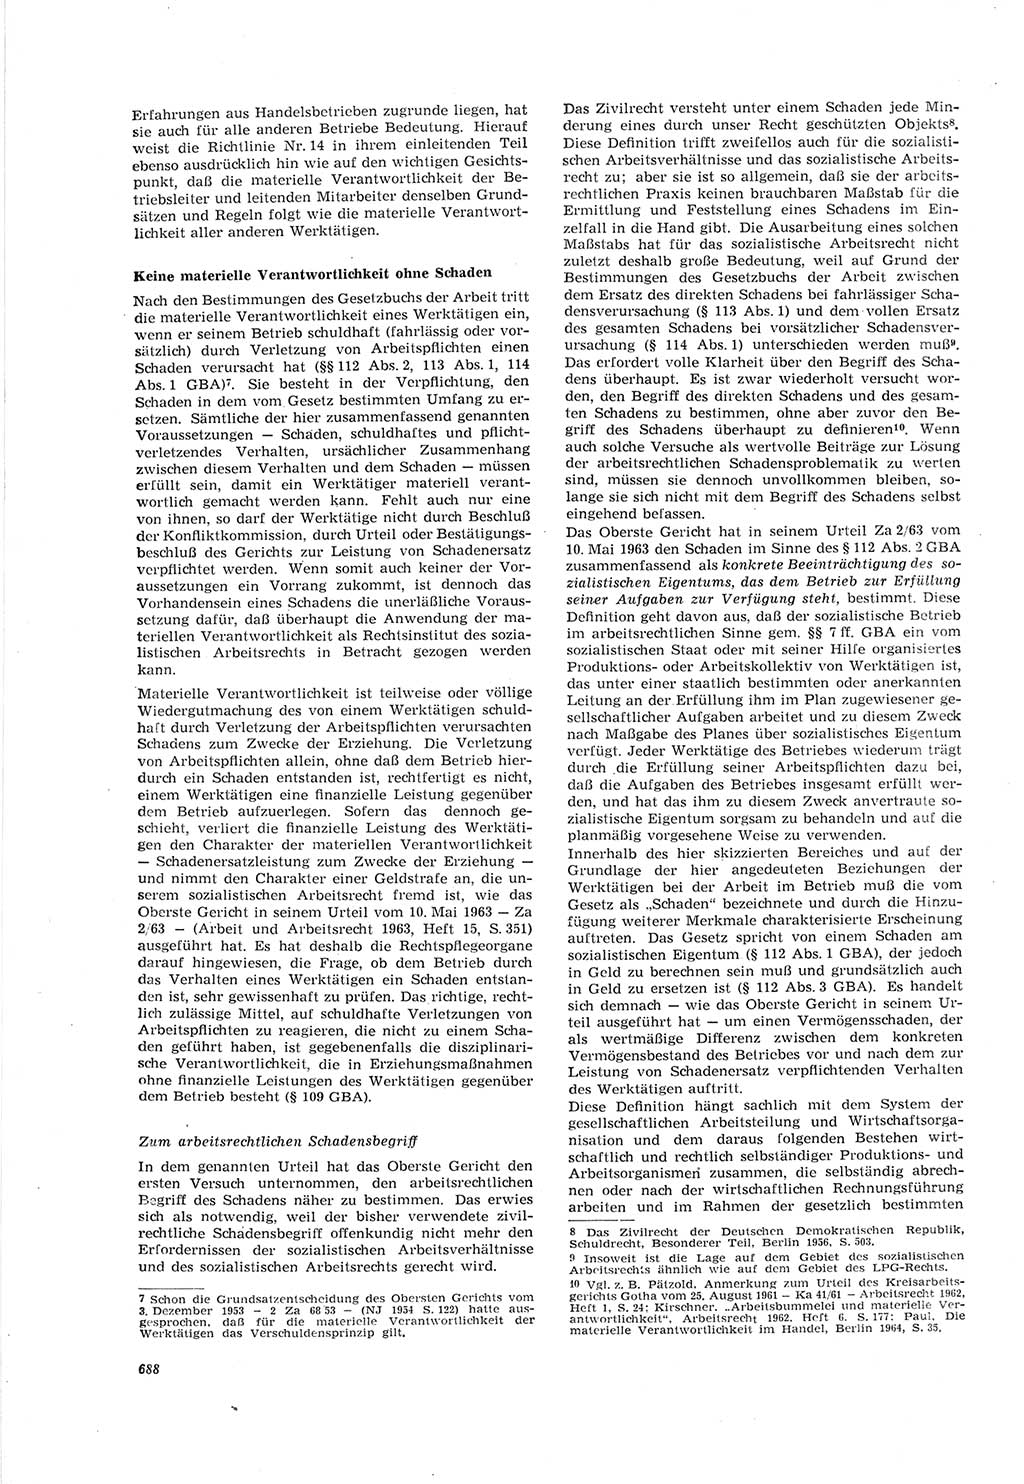 Neue Justiz (NJ), Zeitschrift für Recht und Rechtswissenschaft [Deutsche Demokratische Republik (DDR)], 18. Jahrgang 1964, Seite 688 (NJ DDR 1964, S. 688)